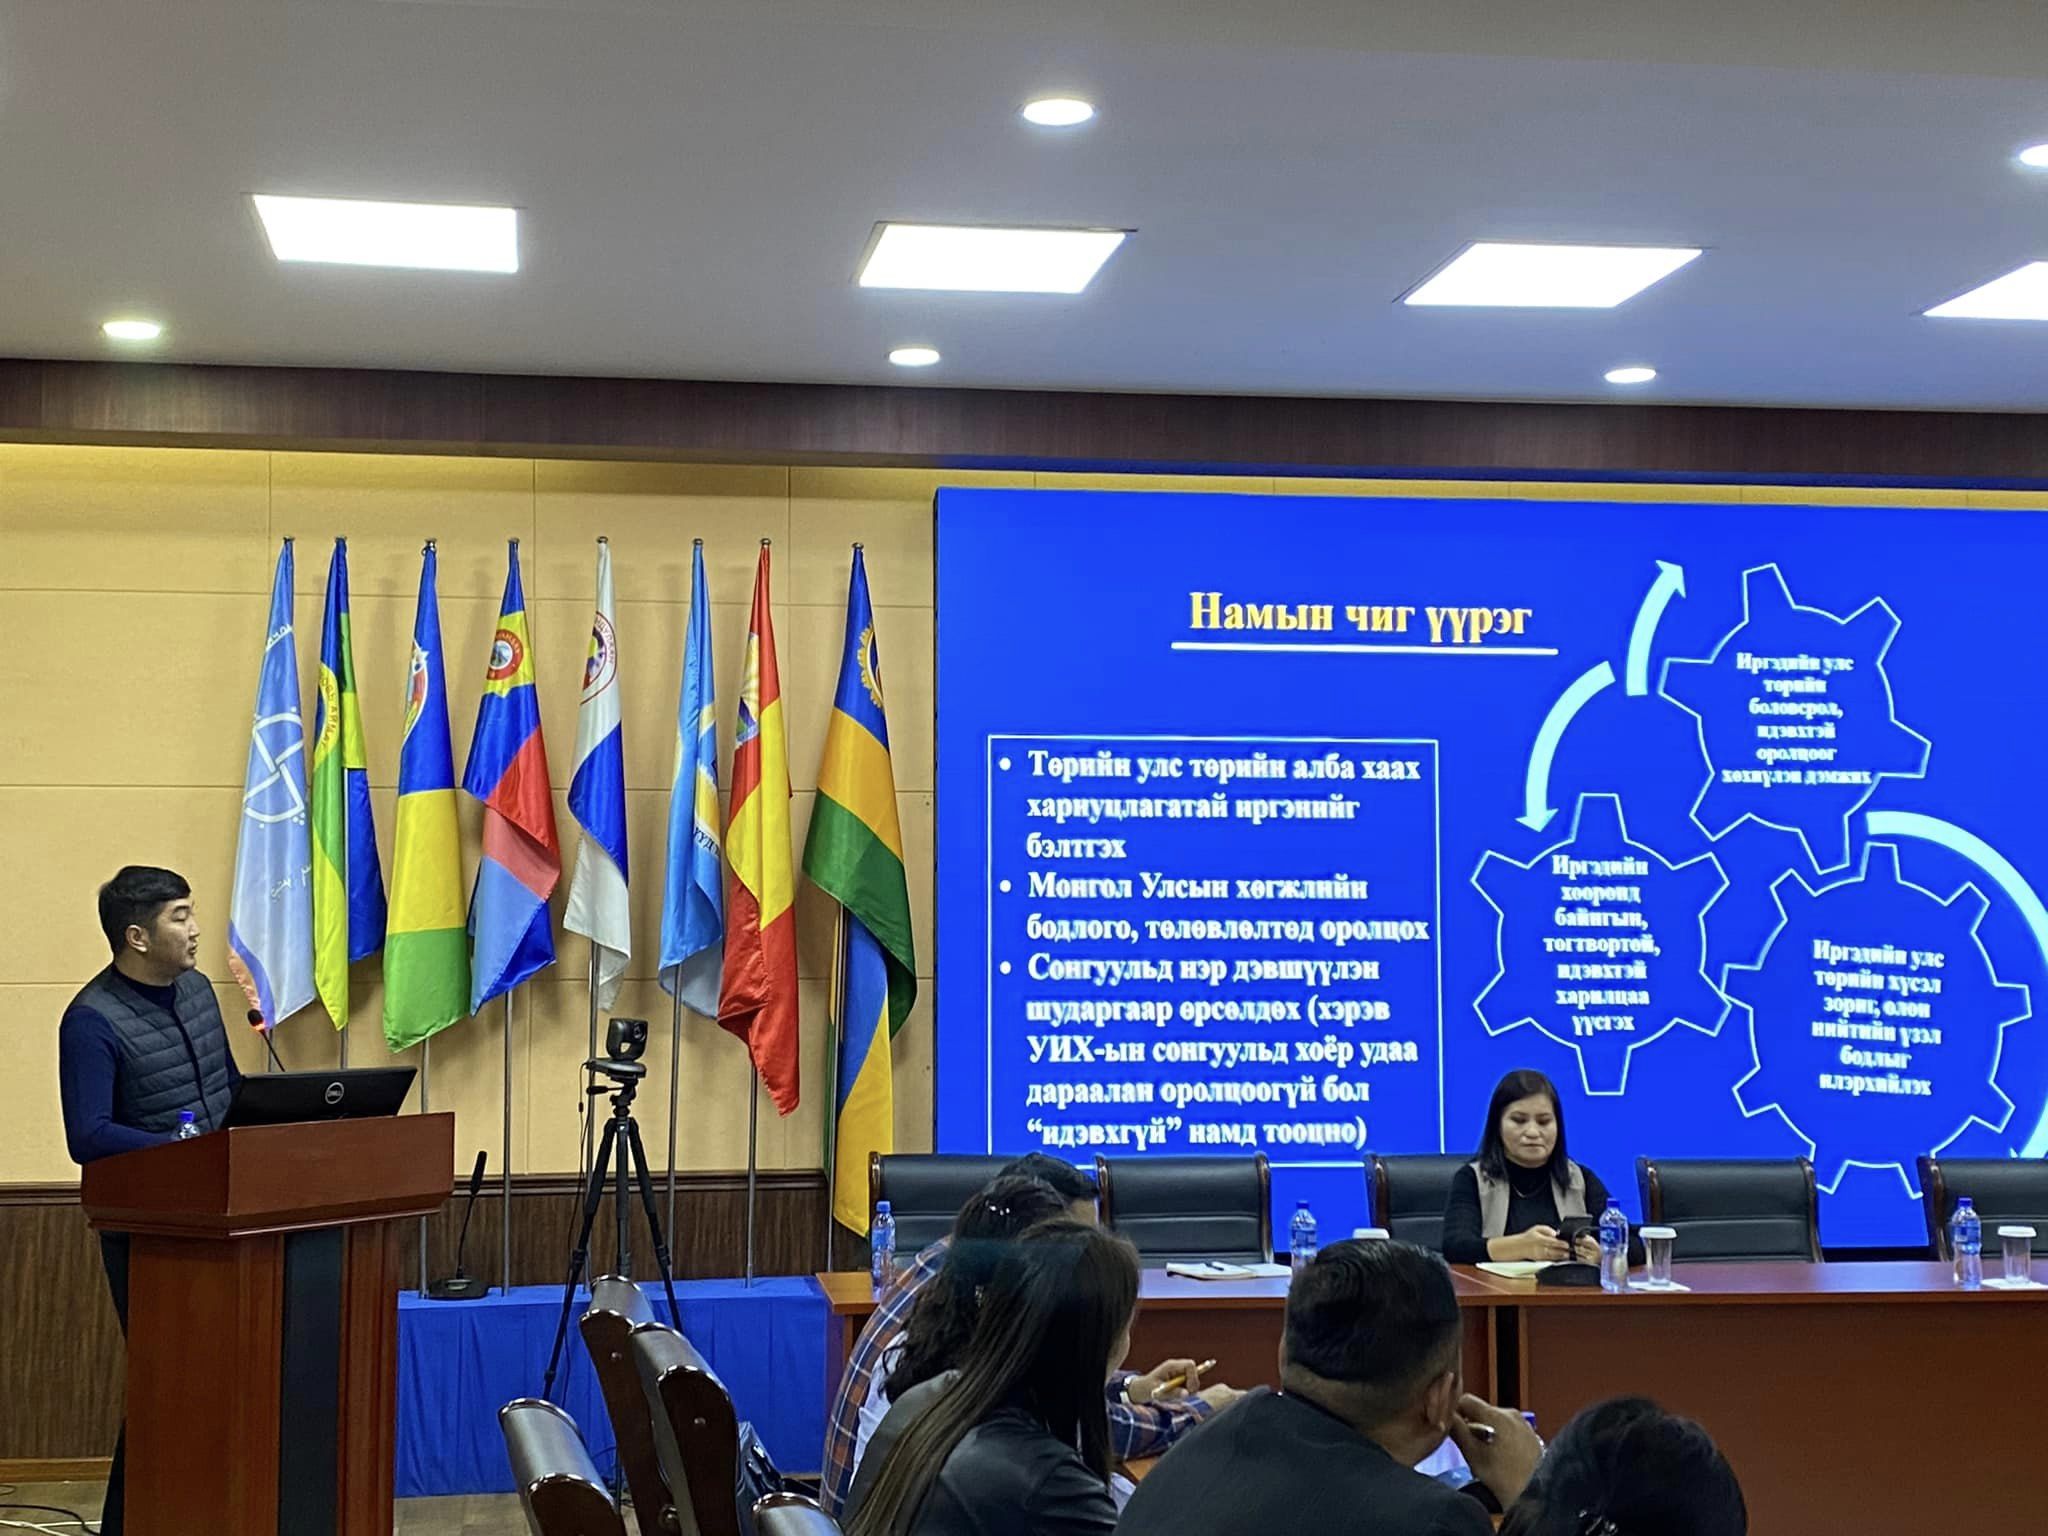 Монгол Улсын Их хурлын сонгуулийн тухай хуульд оруулсан нэмэлт, өөрчлөлтийн талаар сургалт, уулзалт зохион байгууллаа